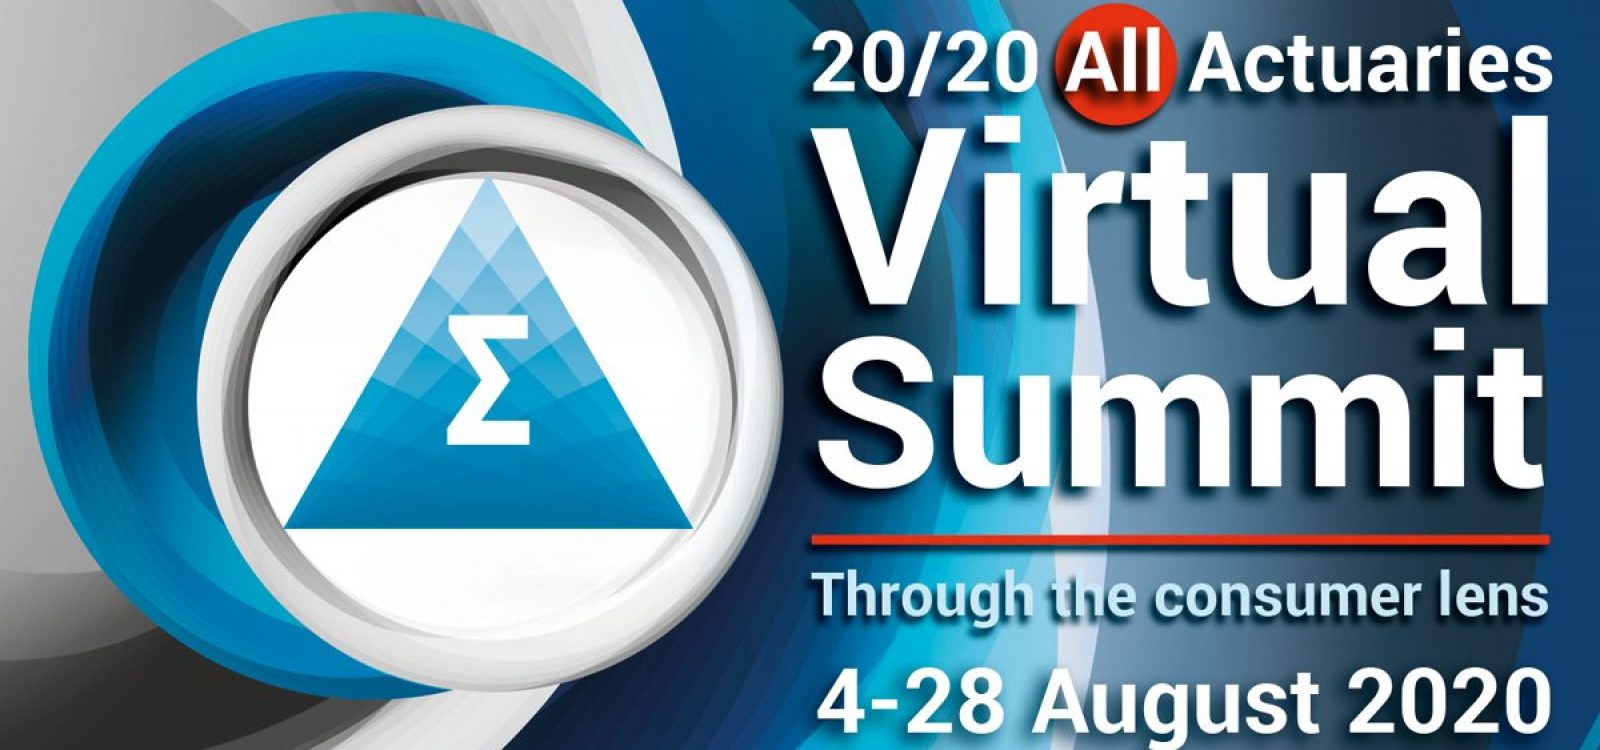 Laureate Professor Peter Doherty at 20/20 All-Actuaries Virtual Summit